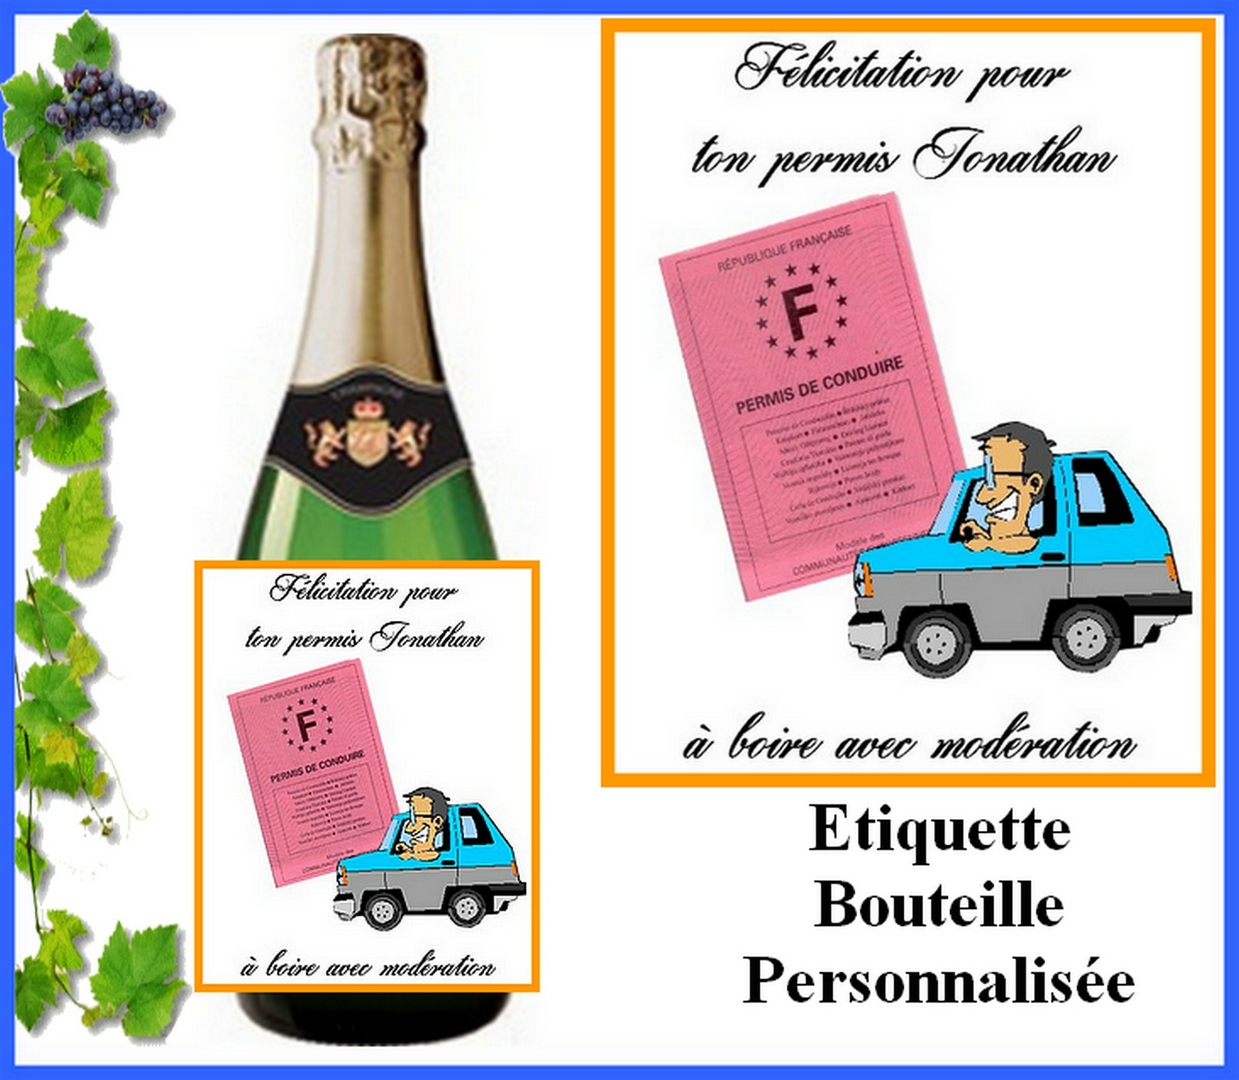 Étiquette bouteille personnalisée, Inscriptions au choix, Camion - Cuisine,  Art de table/Etiquette Bouteille - lamouettebleue